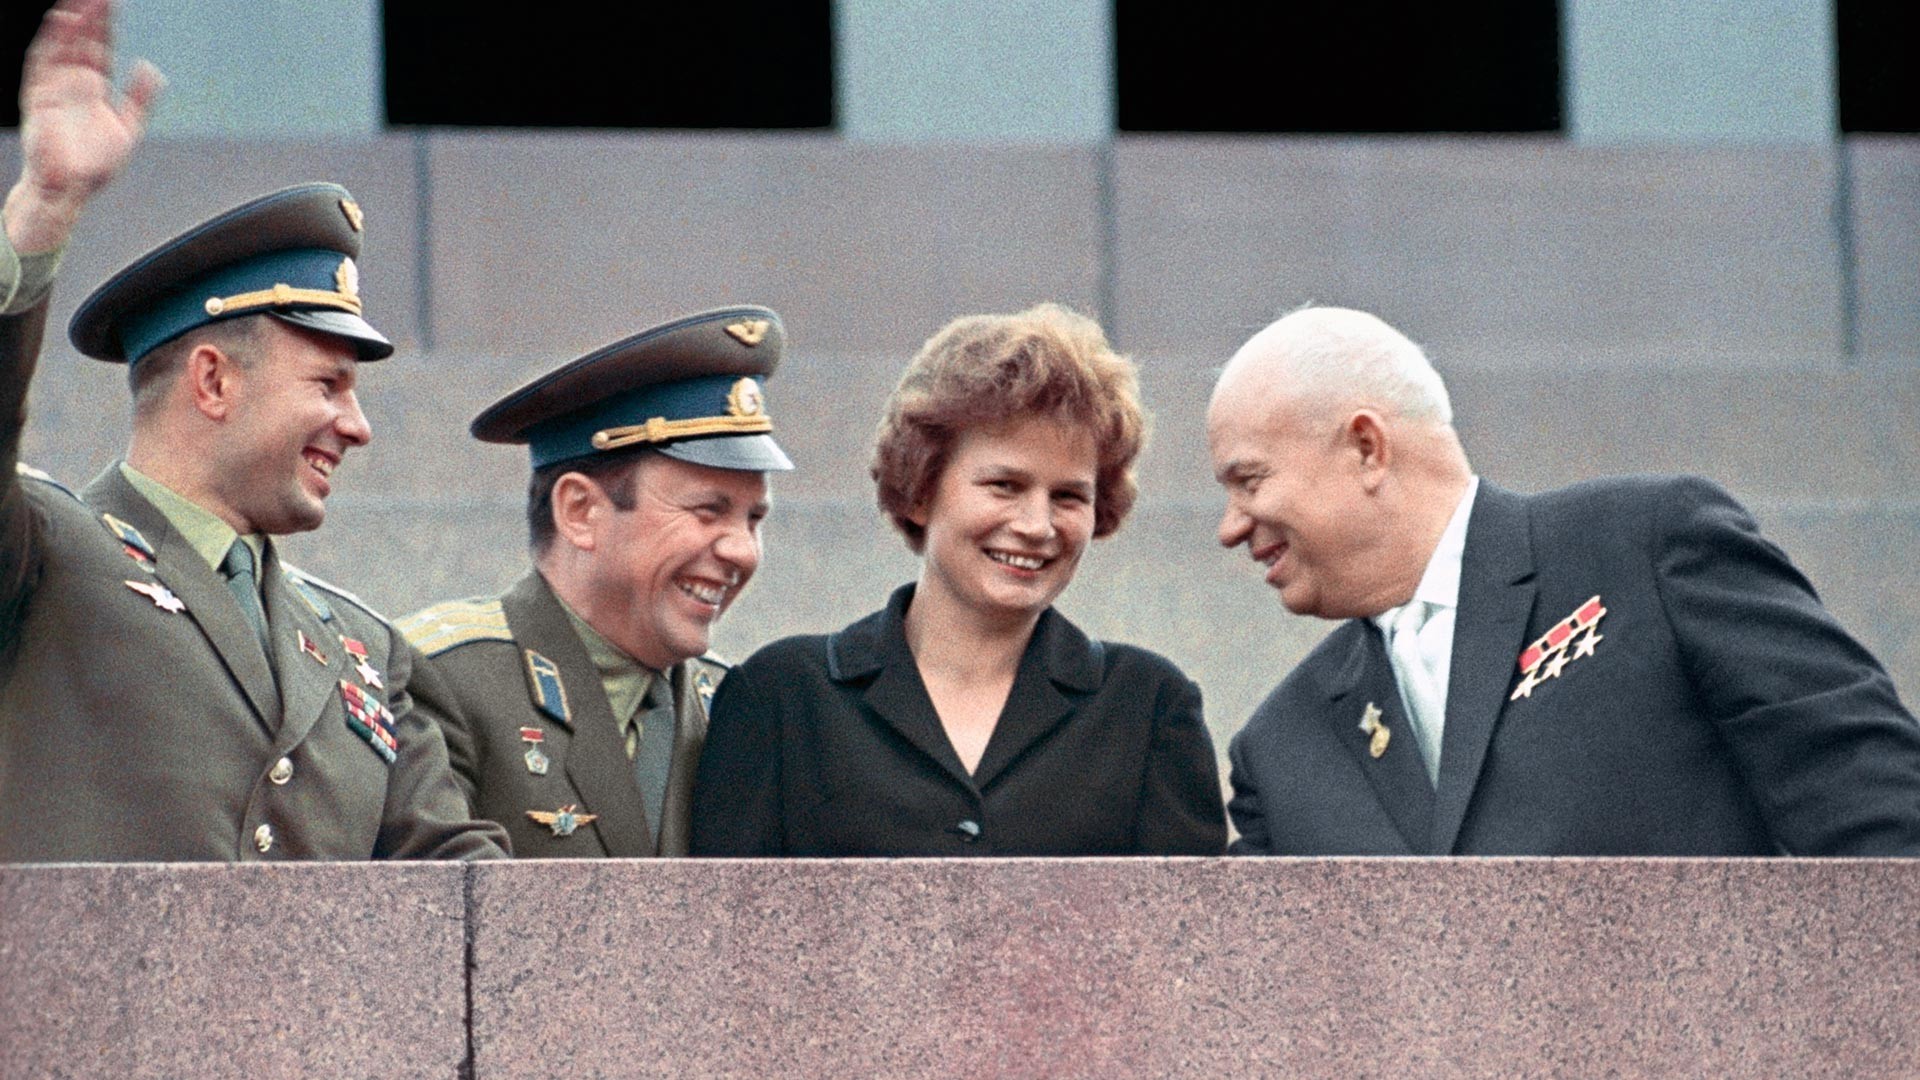 Prvi sekretar Centralnog komiteta Komunističke partije Sovjetskog Saveza Nikita Hruščov i kozmonauti Valentina Tereškova, Pavel Popovič i Jurij Gagarin (zdesna nalijevo).

